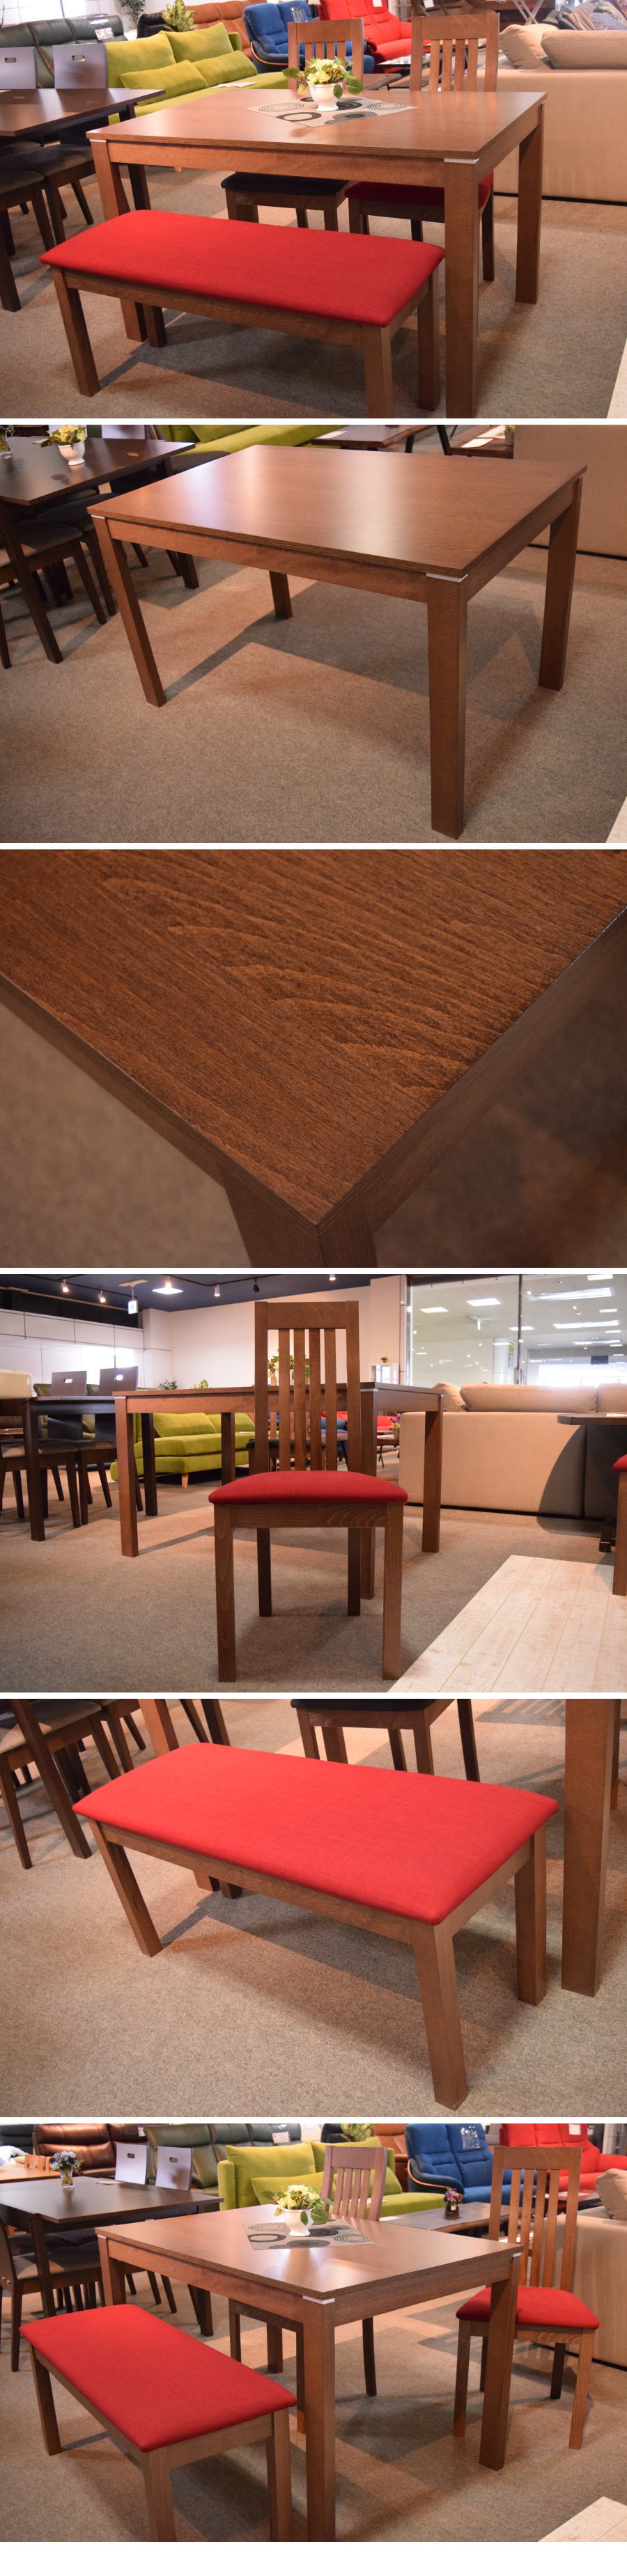 最新品低価天然木ビーチ材 120cm幅 ダイニングテーブル 4点セット アウトレット家具 食卓セットAB0625C2 その他